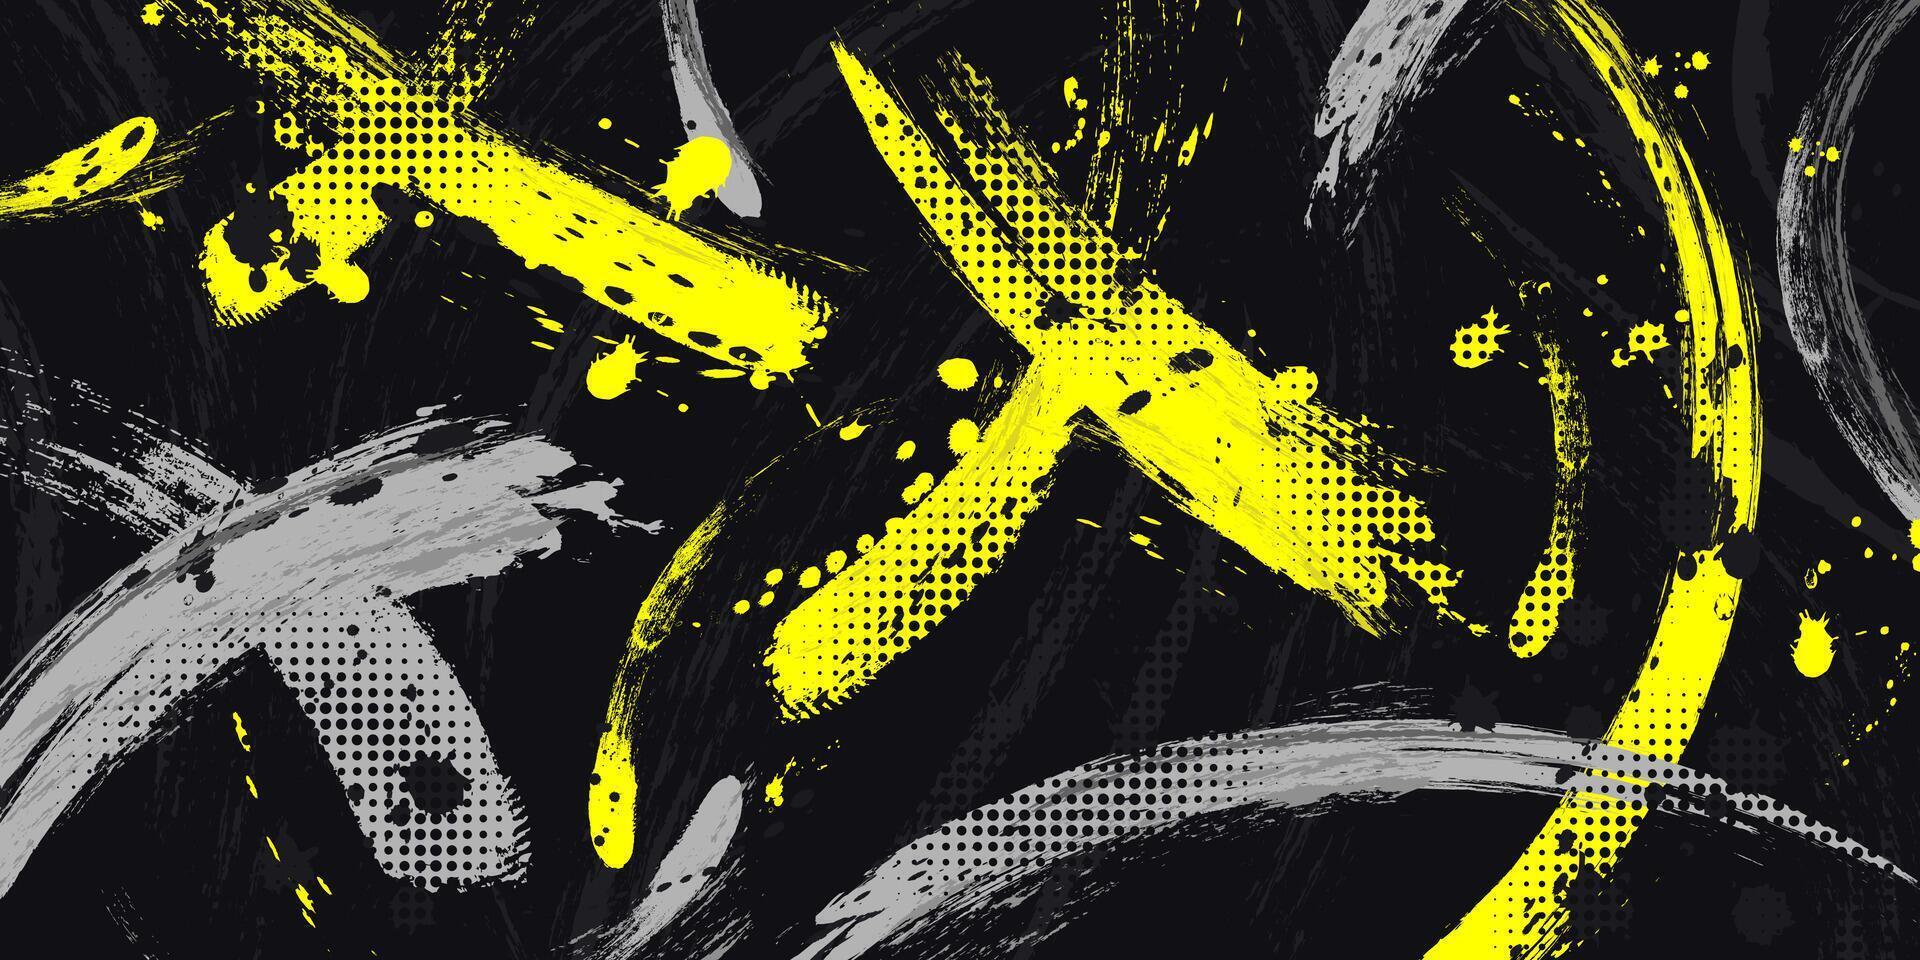 abstrakt grunge bakgrund med grå och gul borsta textur. kreativ design för sporter baner eller affisch vektor